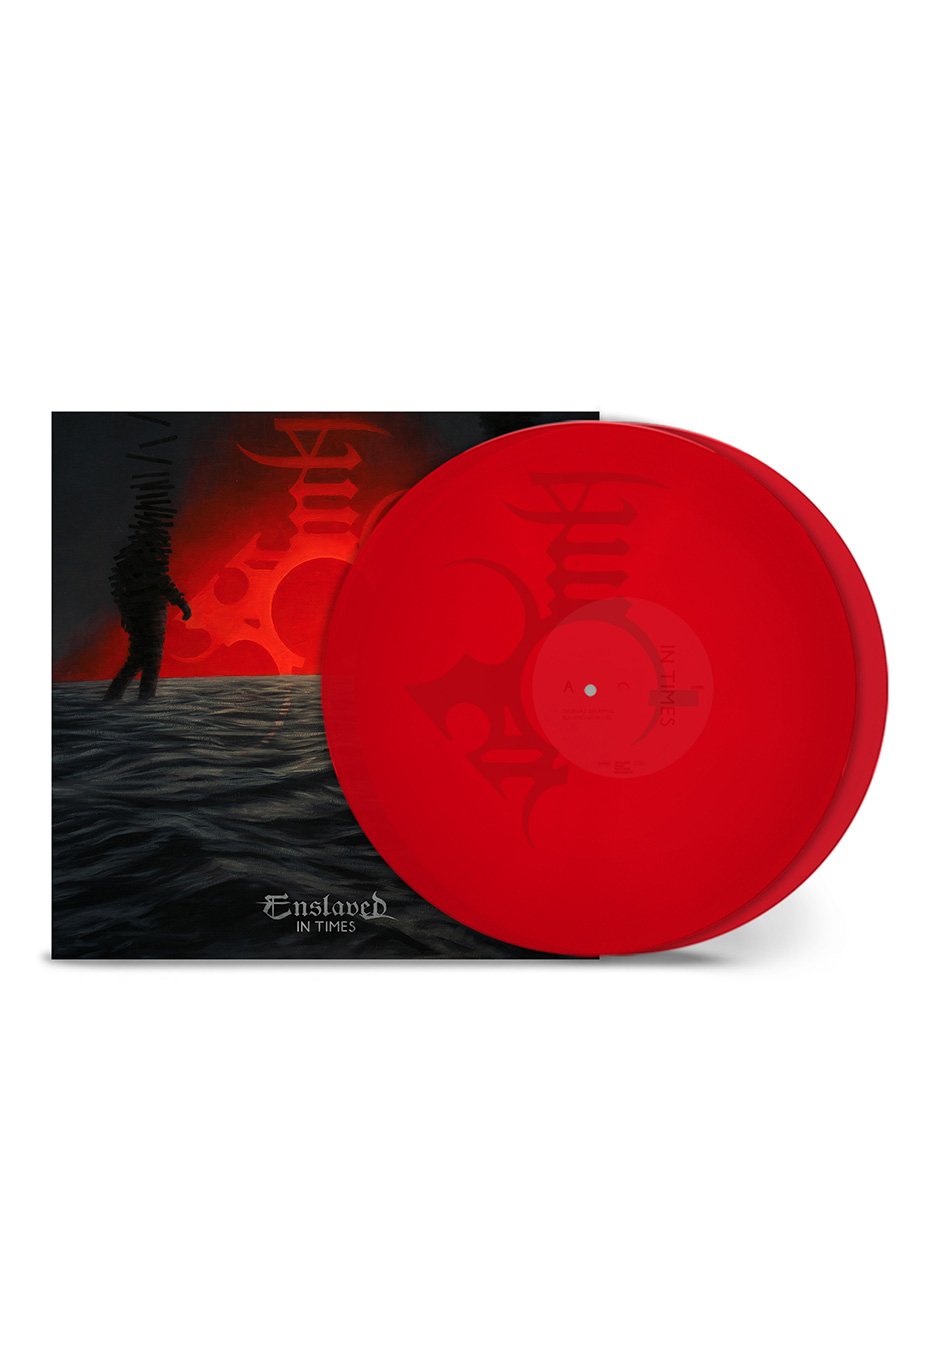 Enslaved - In Times Ltd.Transparent Red - Colored 2 Vinyl